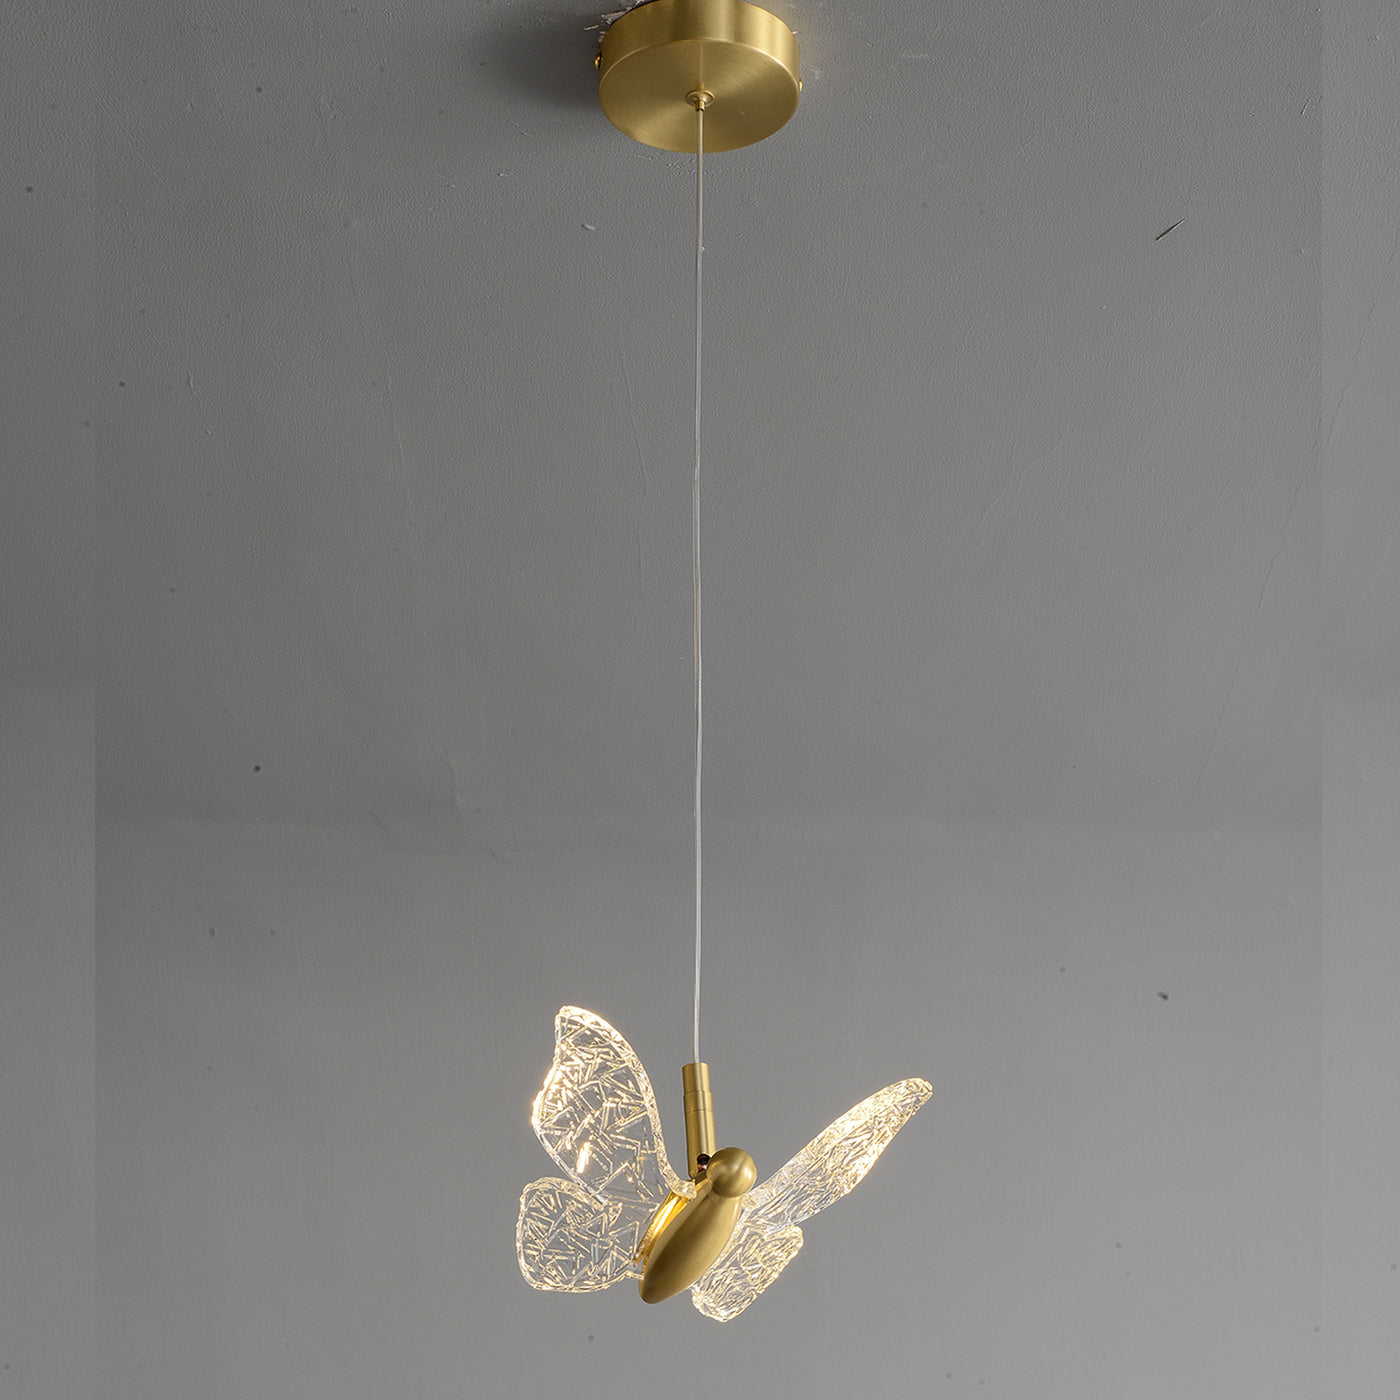 Creative butterfly chandelier